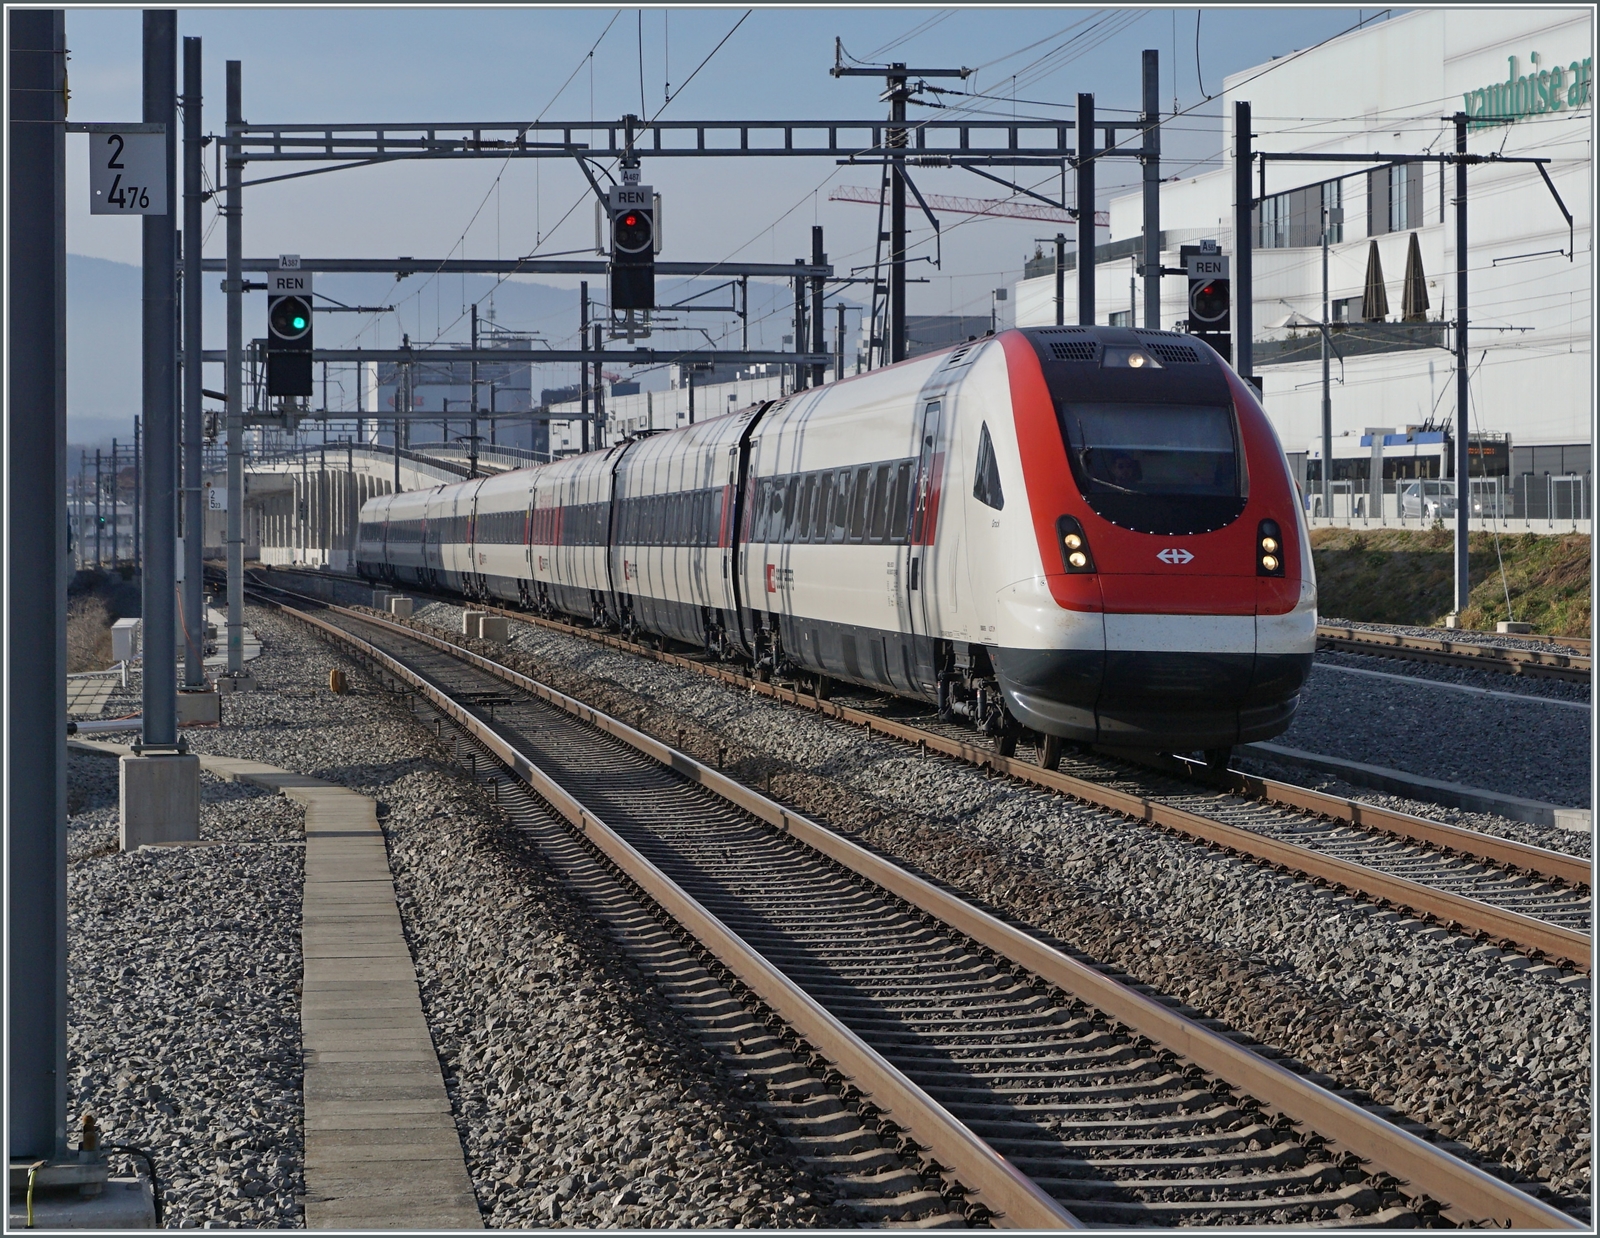 An derselben Stelle in Prilly Malley ist ein SBB ICN RABe 500 auf dem Weg nach Lausanne. 
Standpunkt des Fotografen: am Ende des Bahnsteiges.

21. Februar 2023